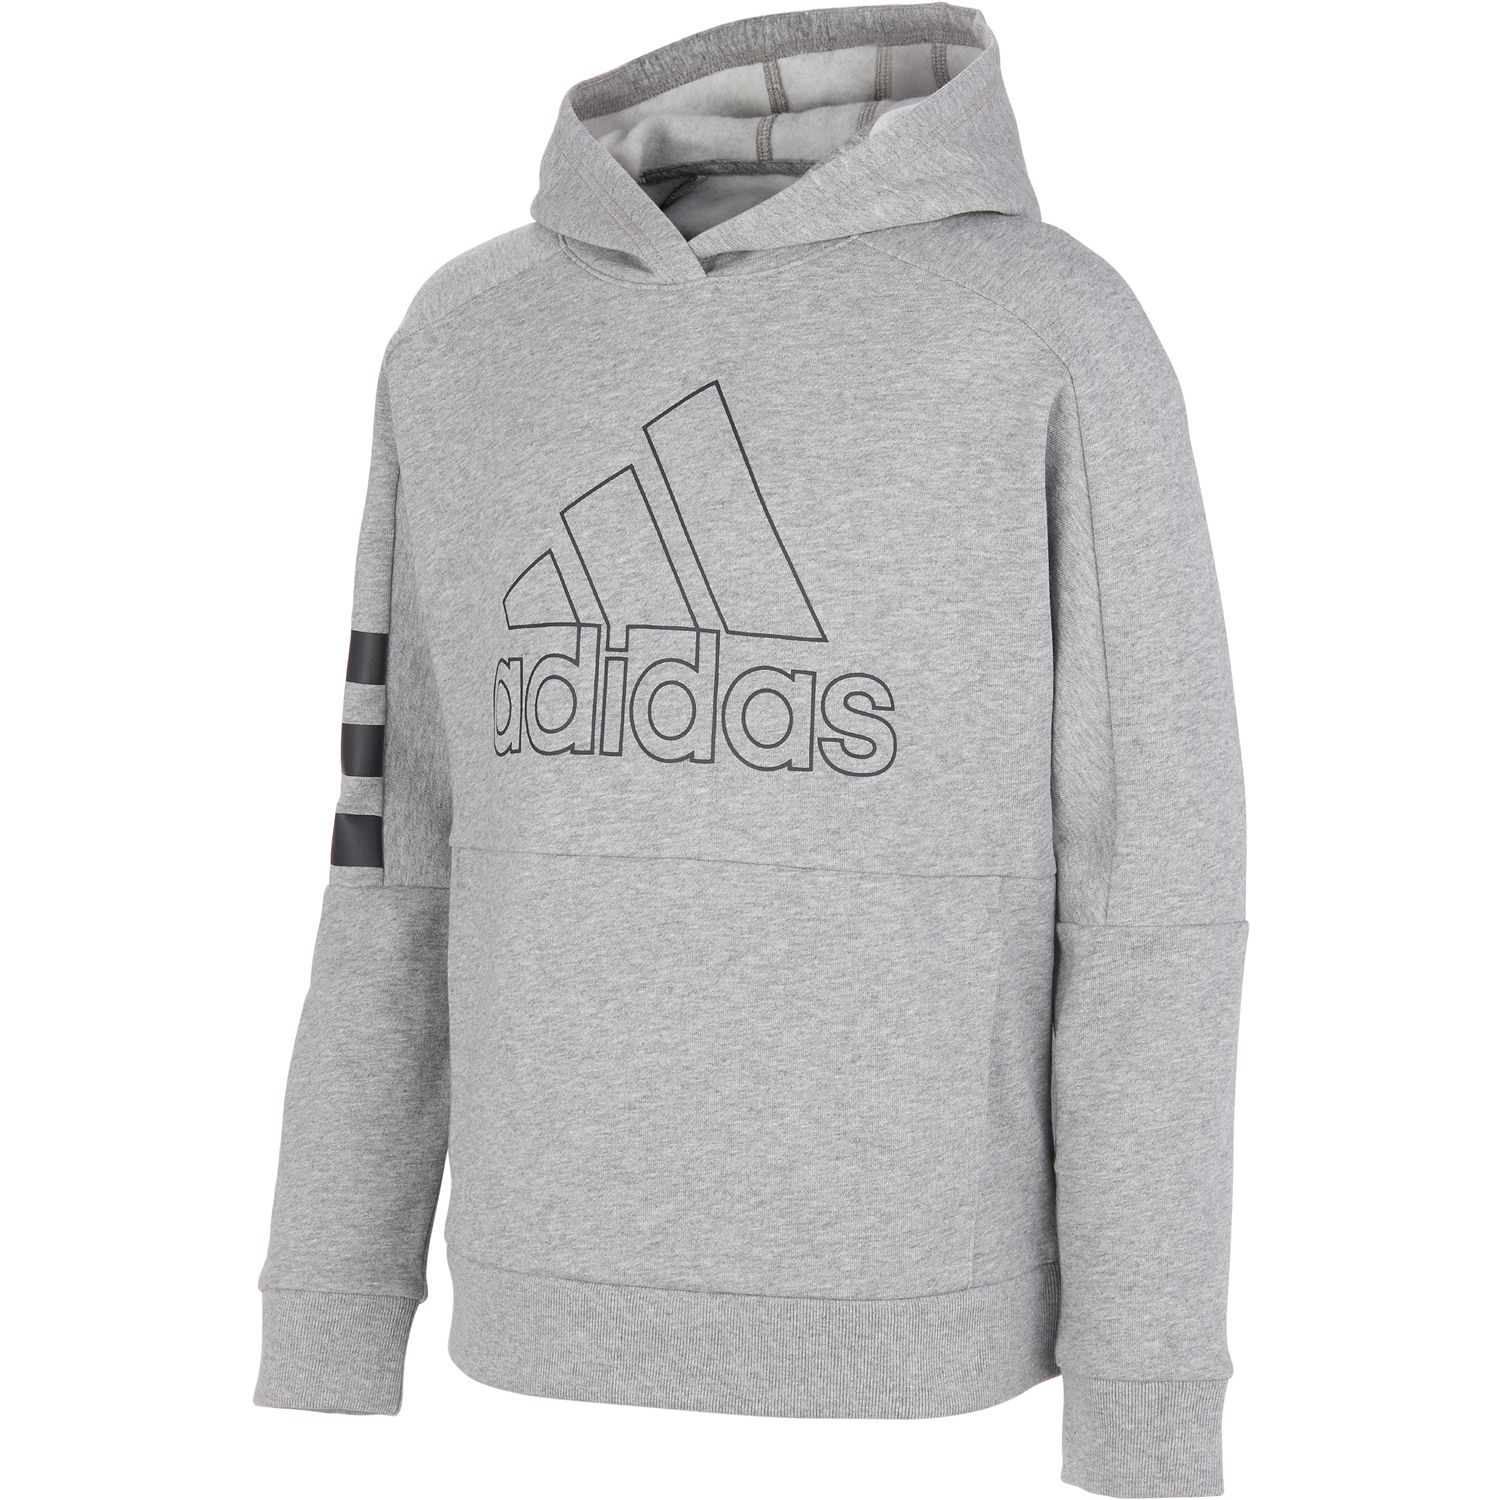 boys grey adidas hoodie